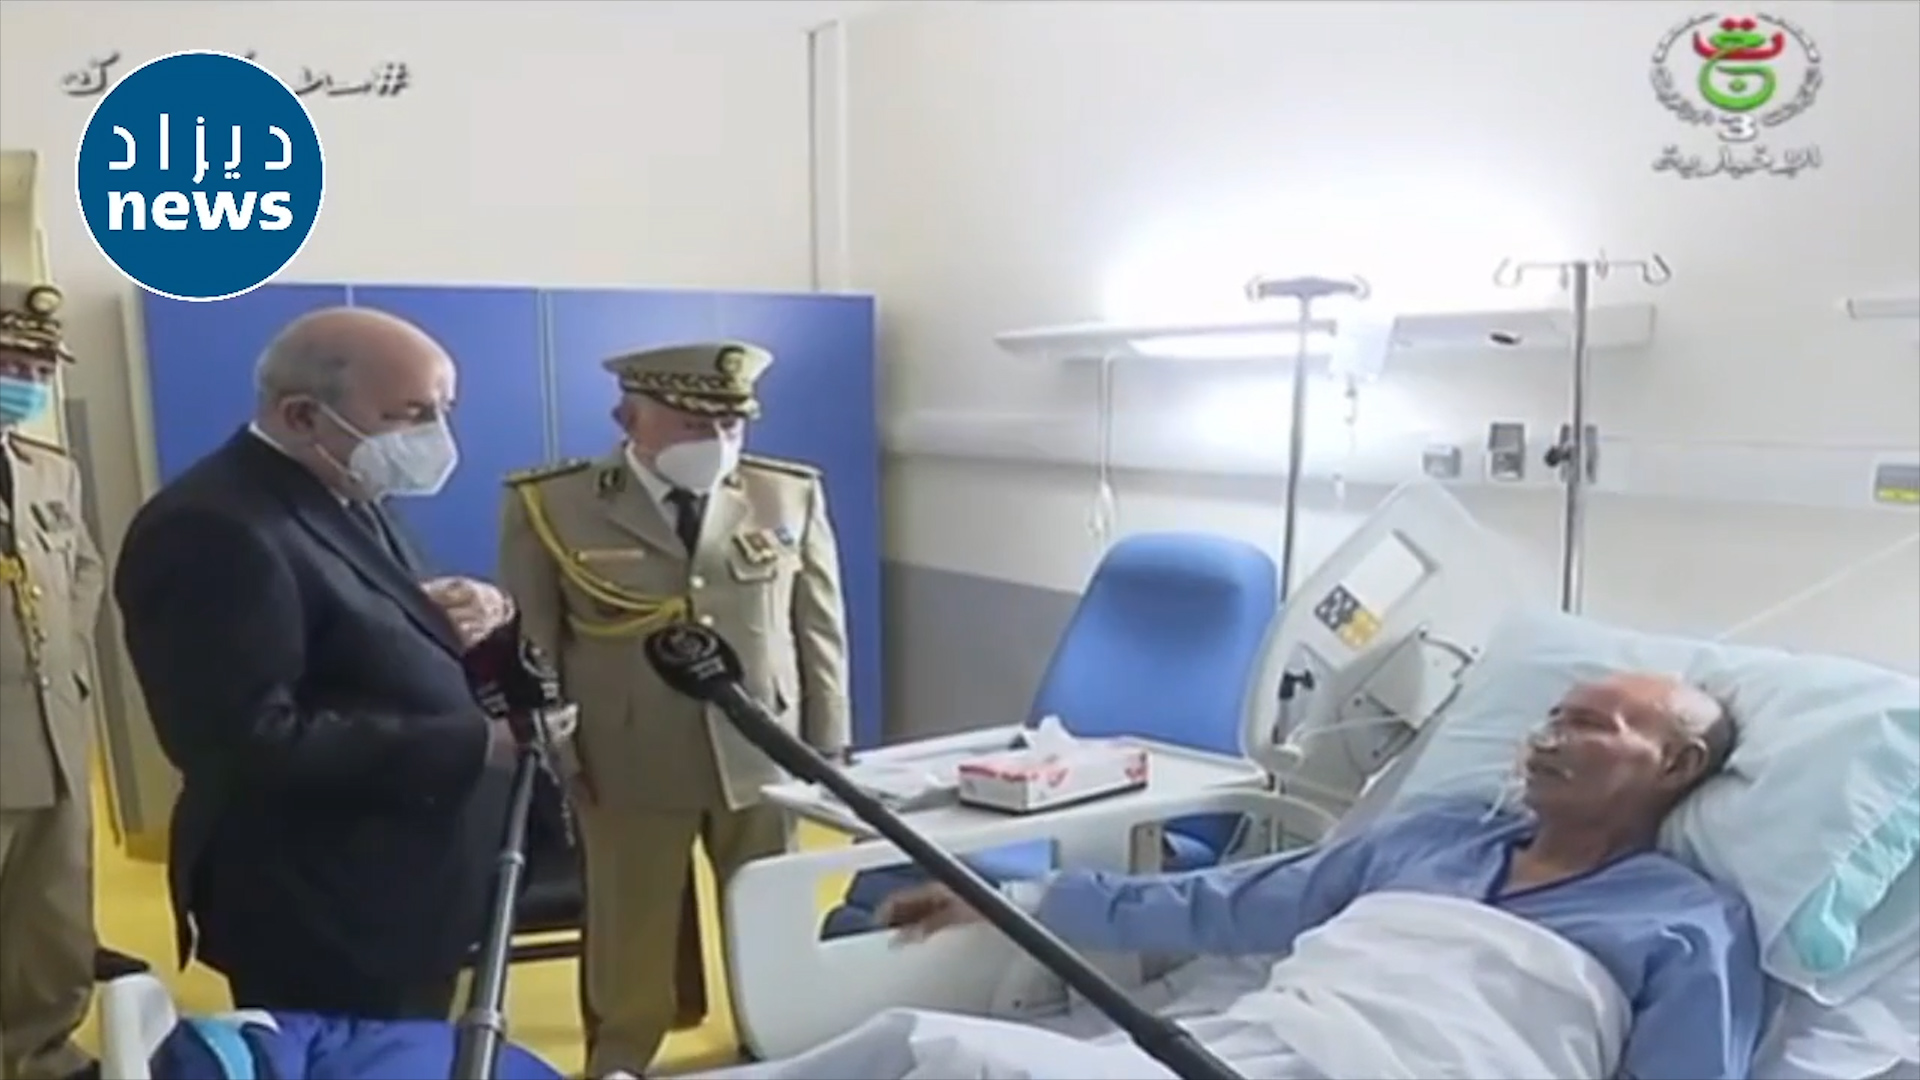 الرئيس تبون يزور الرئيس الصحراوي في المستشفى العسكري عين النعجة بالعاصمة